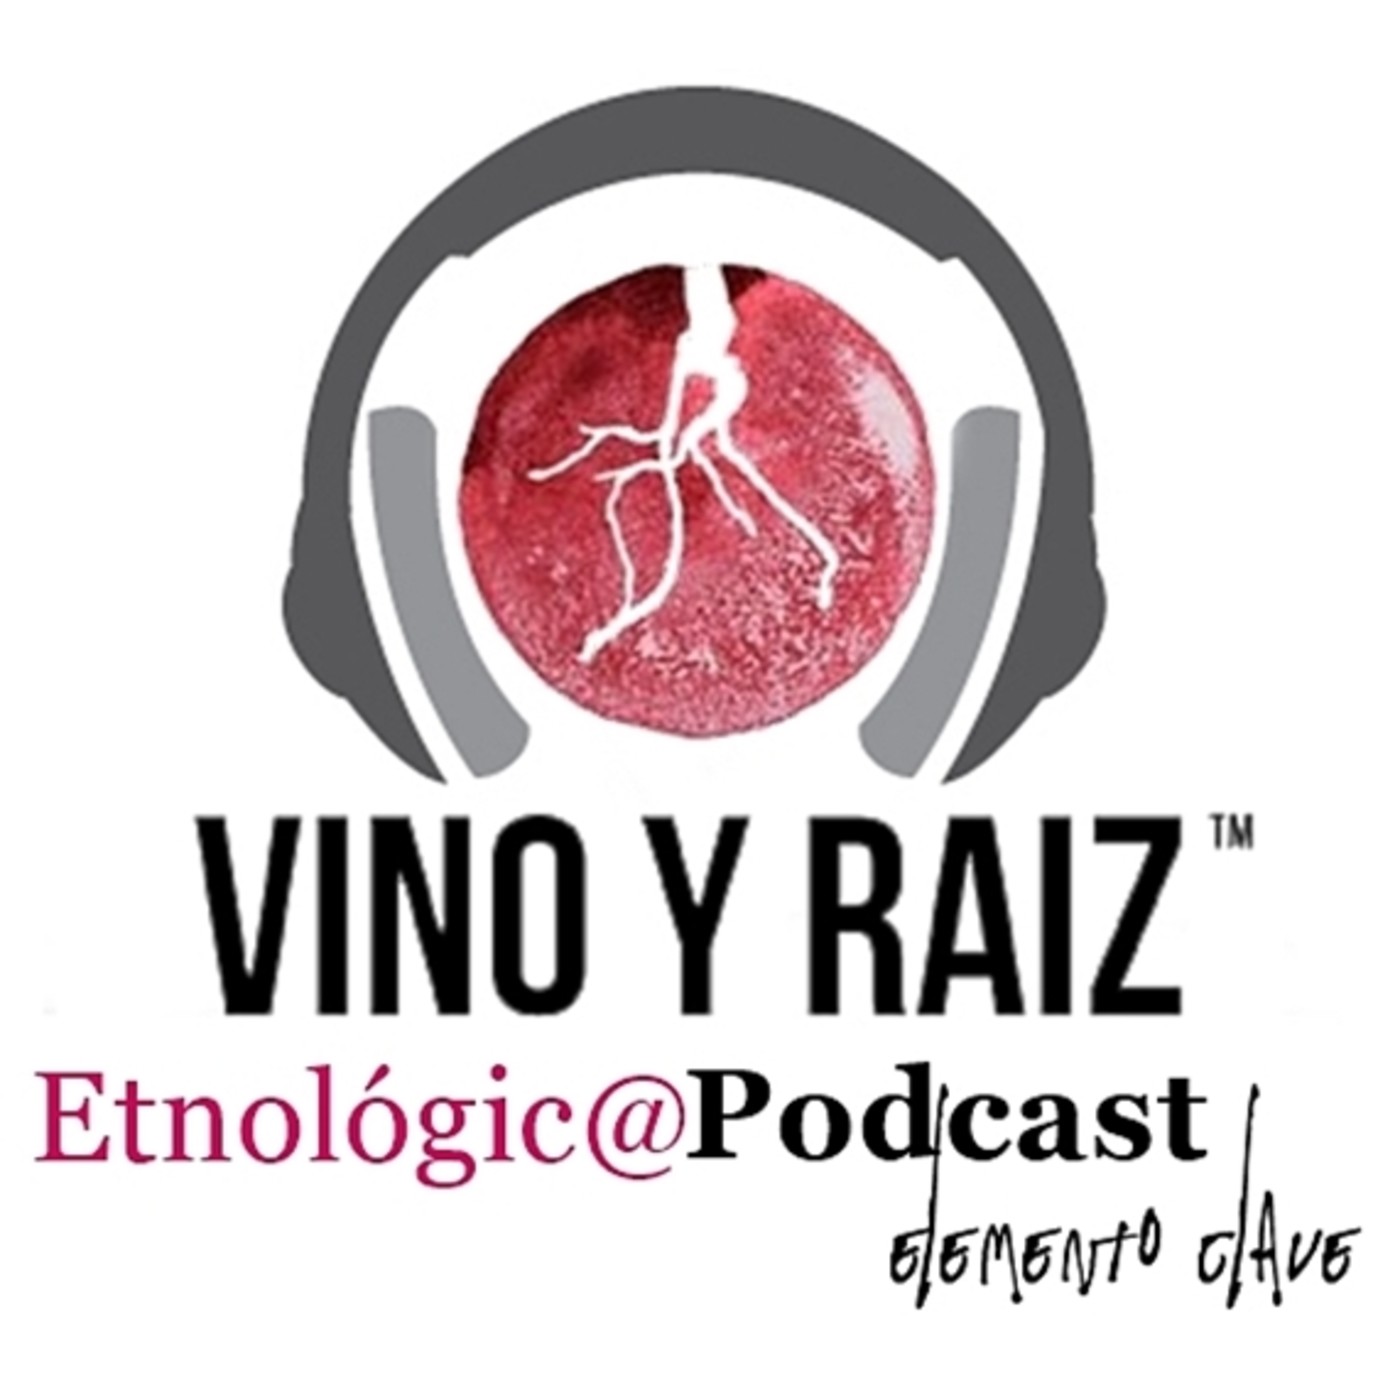 Vino y Raíz - Bodegas Caudalía. Vibraciones y vinos diferentes. La Historia.